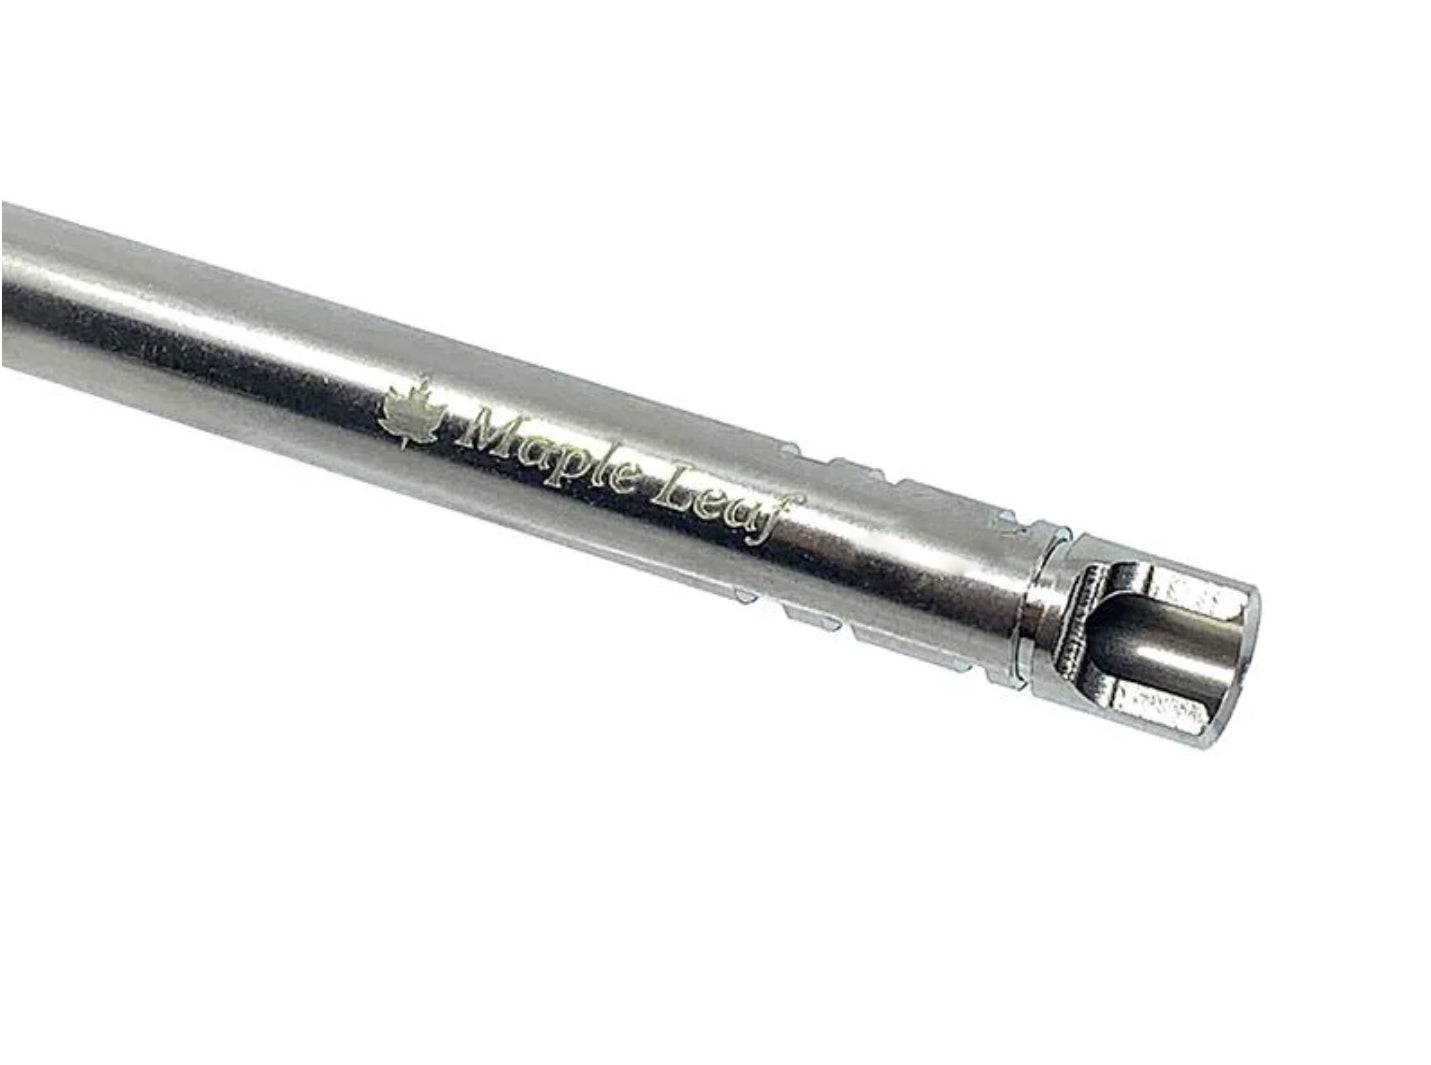 Maple Leaf 6.04mm Crazy Jet Inner Barrel (138mm) for Marui / Stark Arms / WE / KJW GBB Pistol